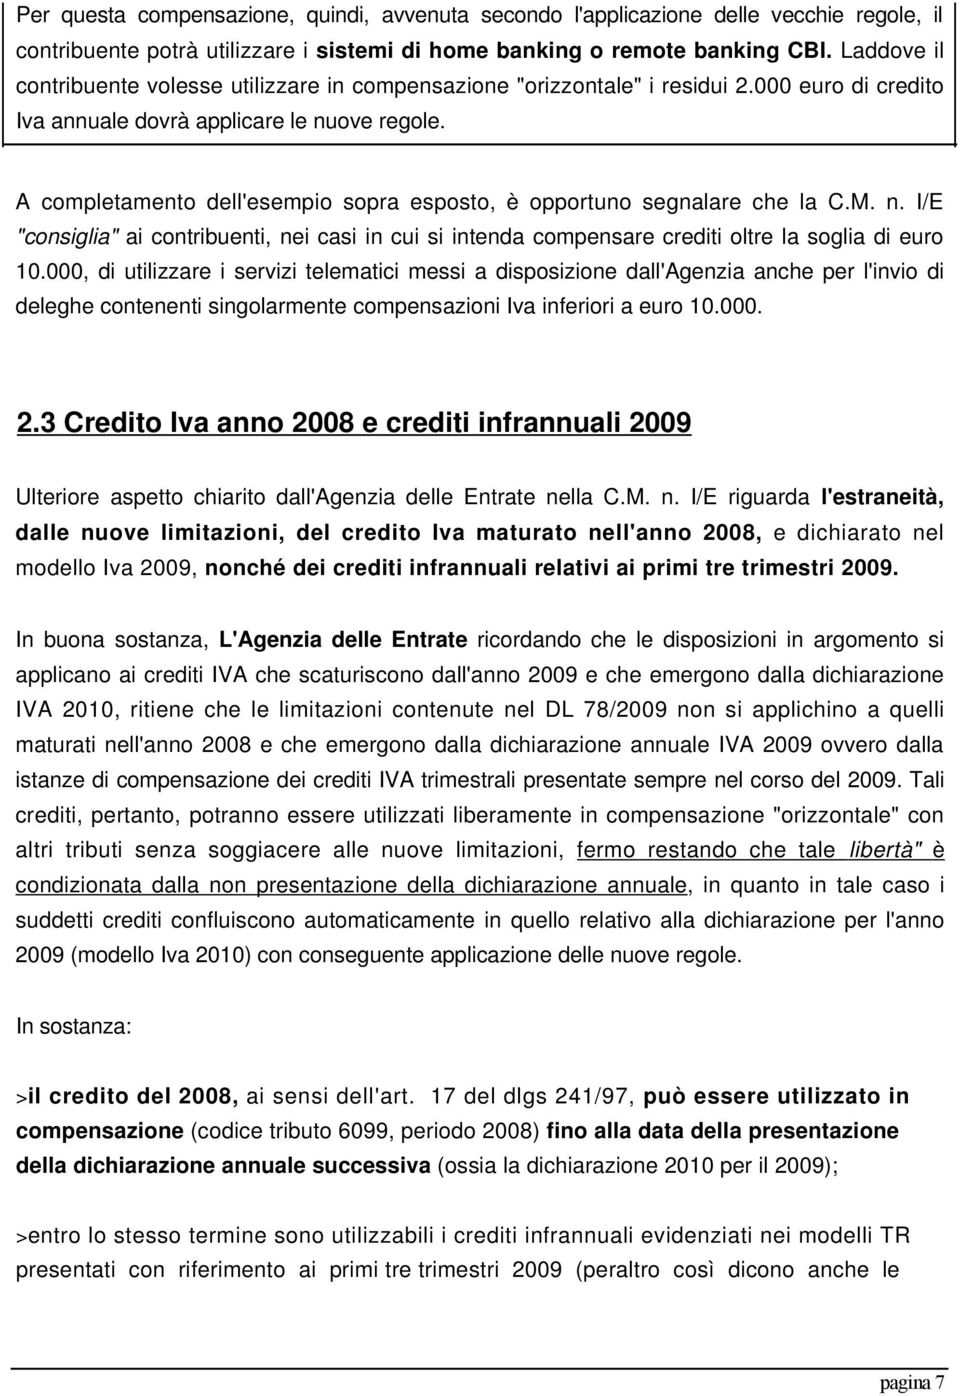 A completamento dell'esempio sopra esposto, è opportuno segnalare che la C.M. n. I/E "consiglia" ai contribuenti, nei casi in cui si intenda compensare crediti oltre la soglia di euro 10.